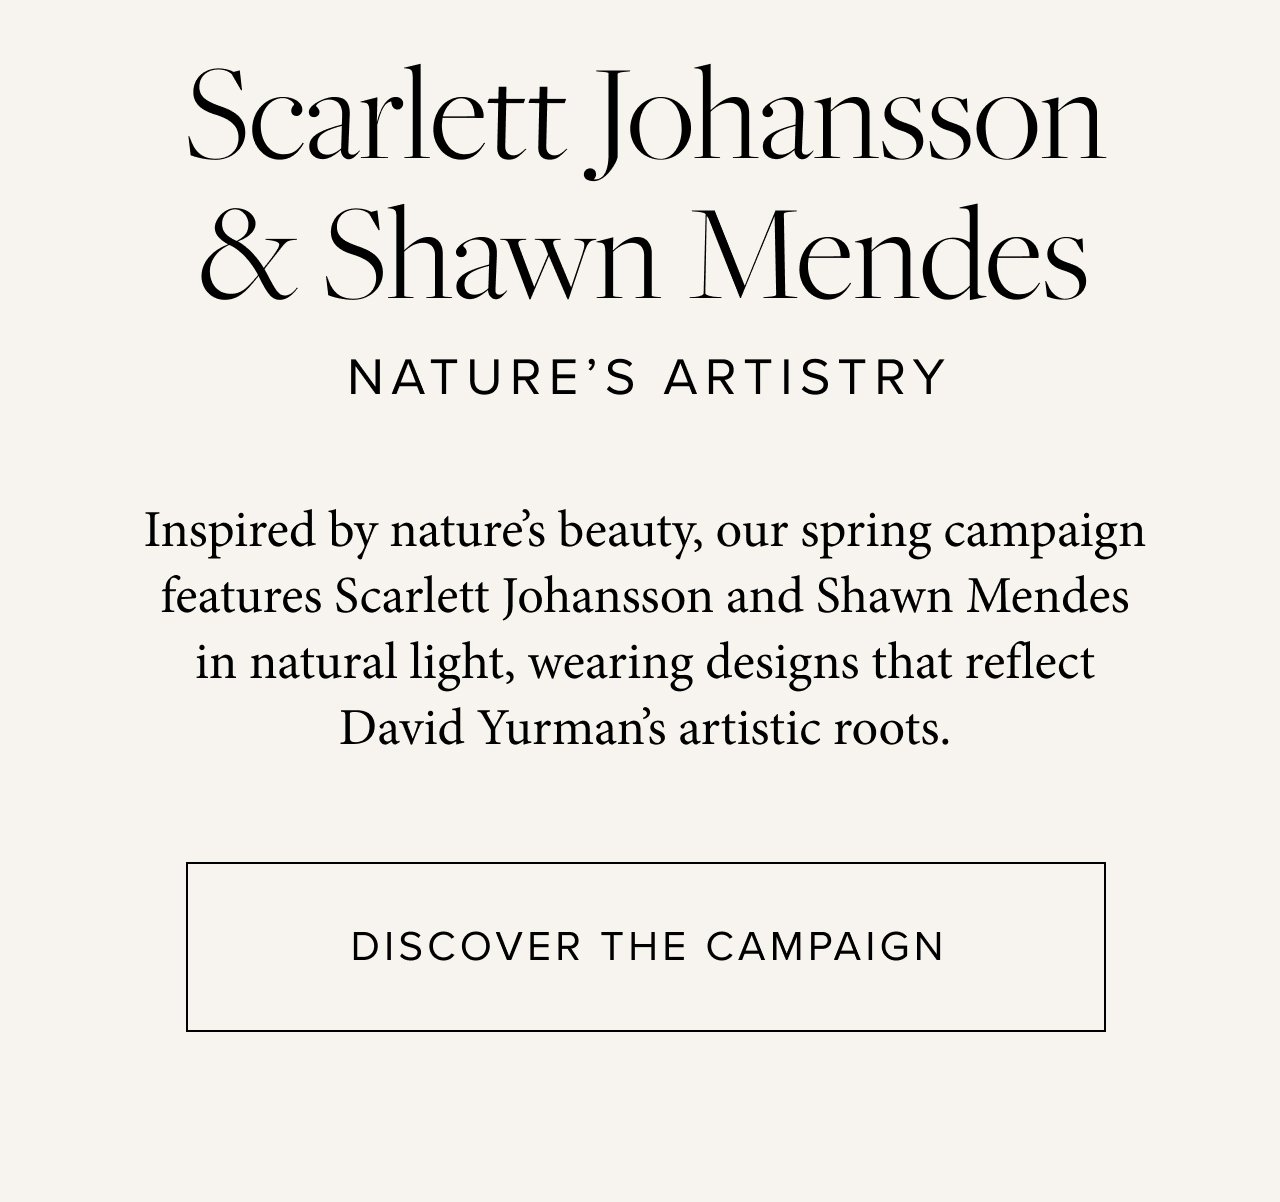 Shawn Mendes Stars in David Yurman's New Jewelry Campaign